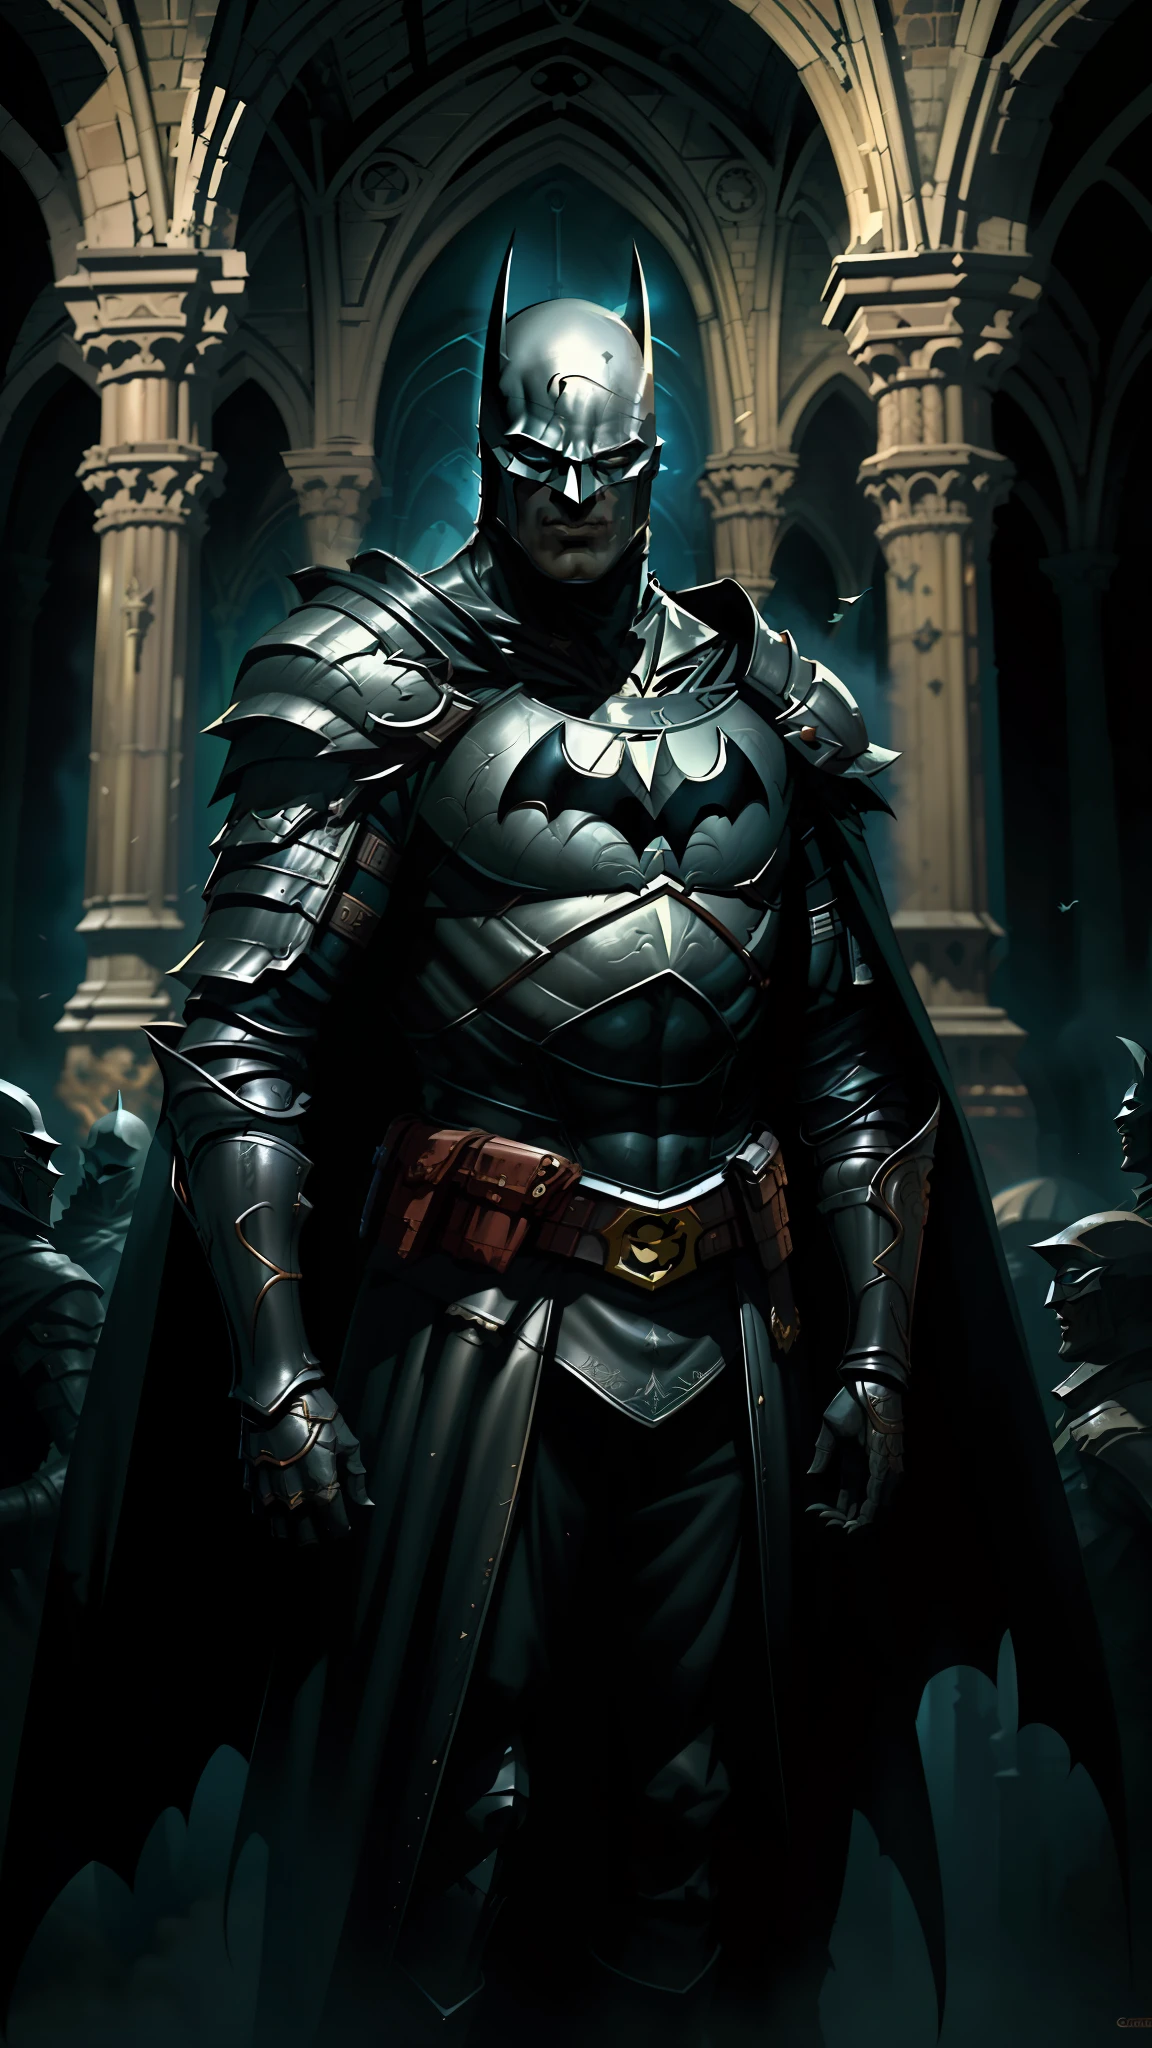 維多利亞大教堂, 蝙蝠俠 (直流漫畫) 身穿黑色中世紀盔甲, 背部長長的黑色斗篷, 奇特的艺术, 格雷格·魯特科斯基藝術風格, 黑暗幻想, 黑闇騎士, 蝙蝠俠, 虚幻引擎 5, 8K.